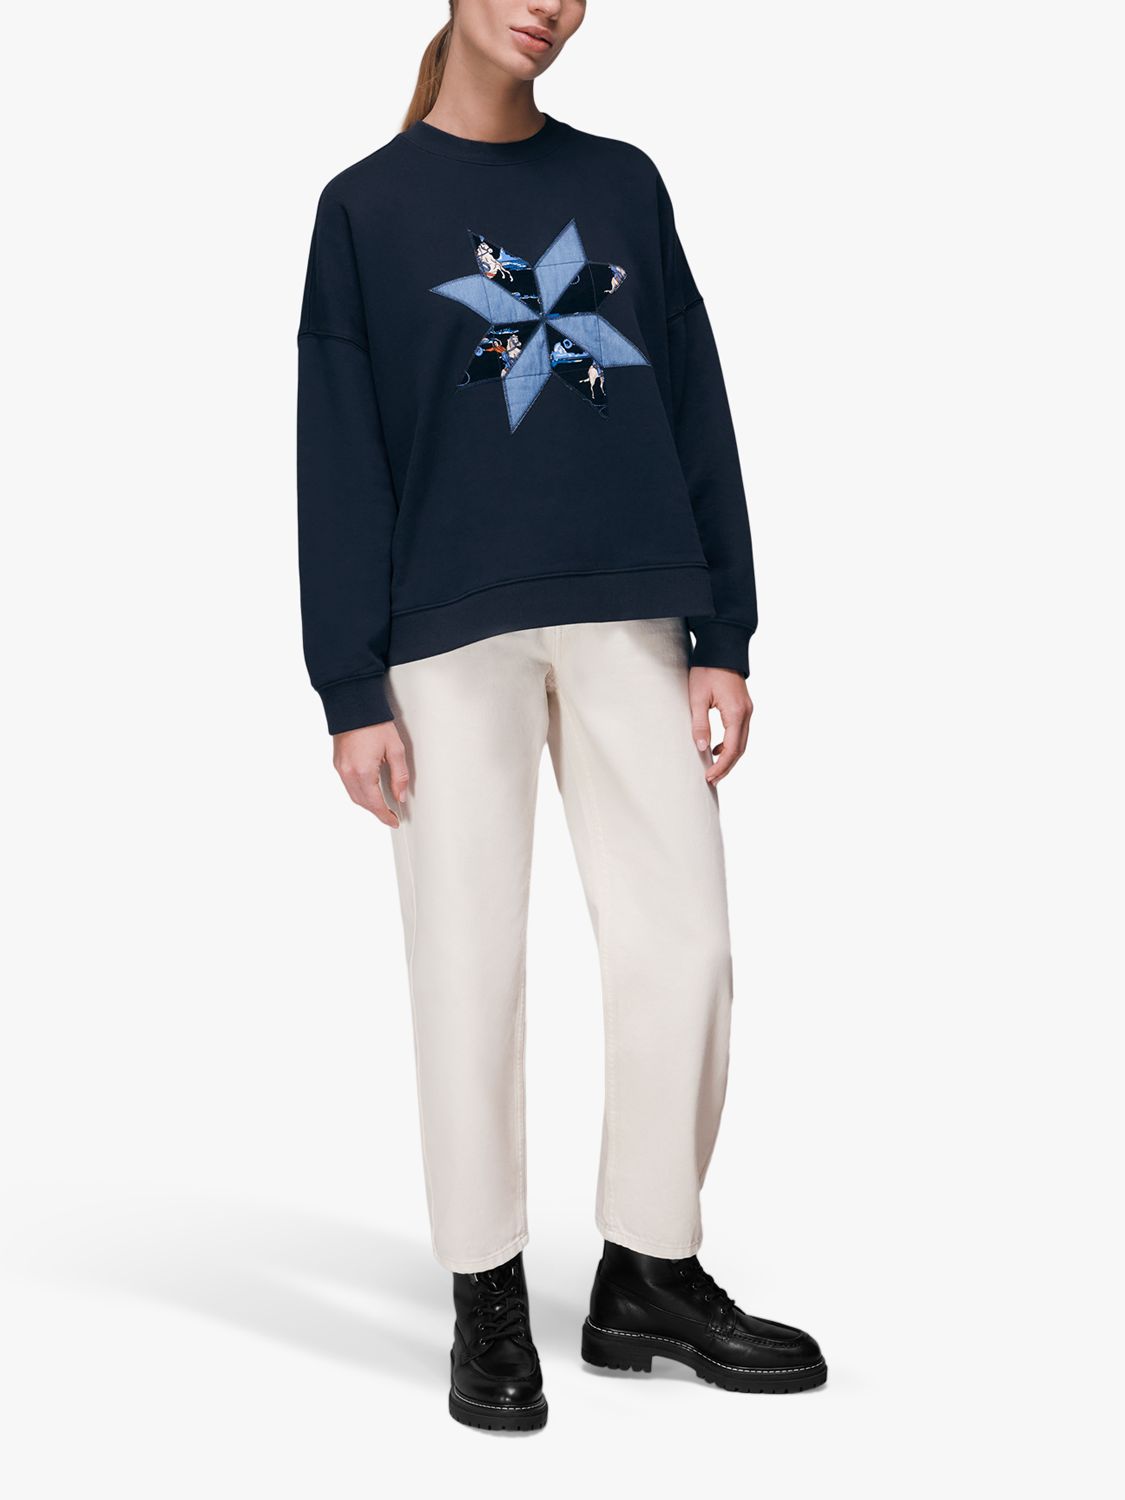 Louis Vuitton Beige Cashmere Blend Monogram Sweatpants